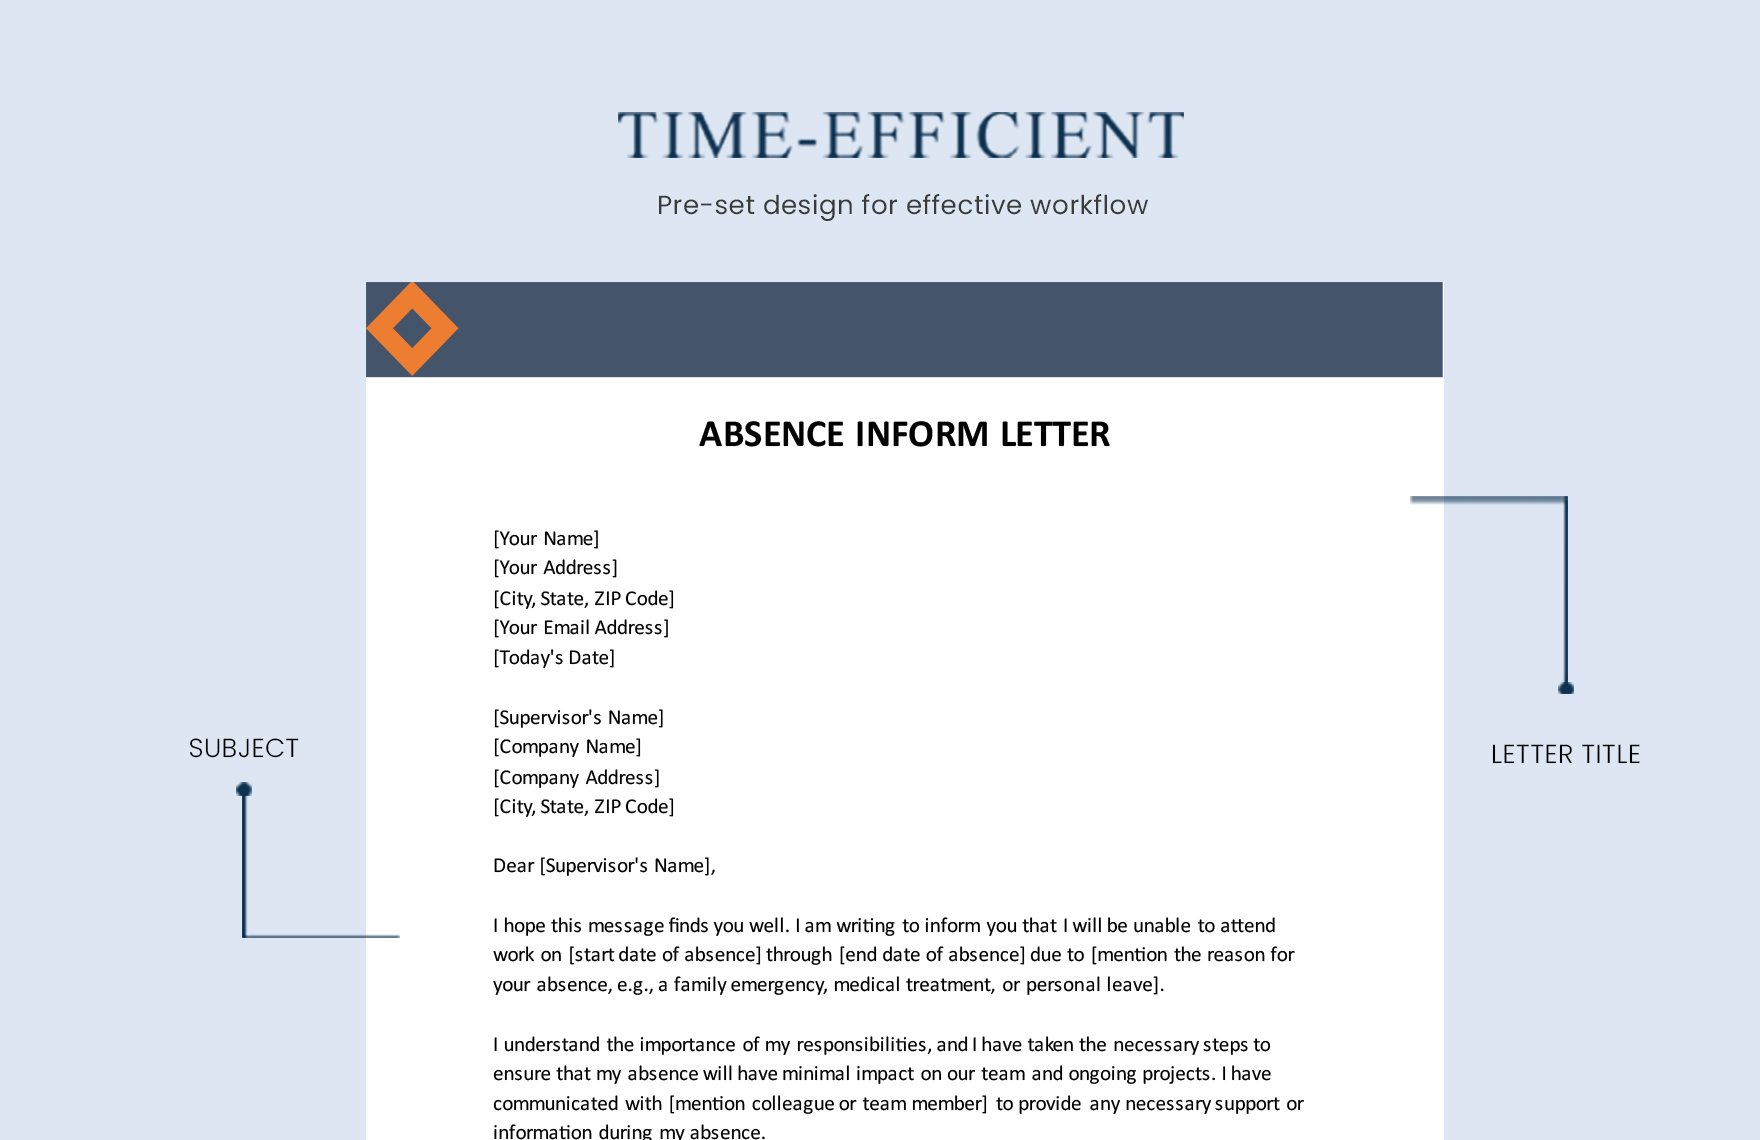 Absence Inform Letter